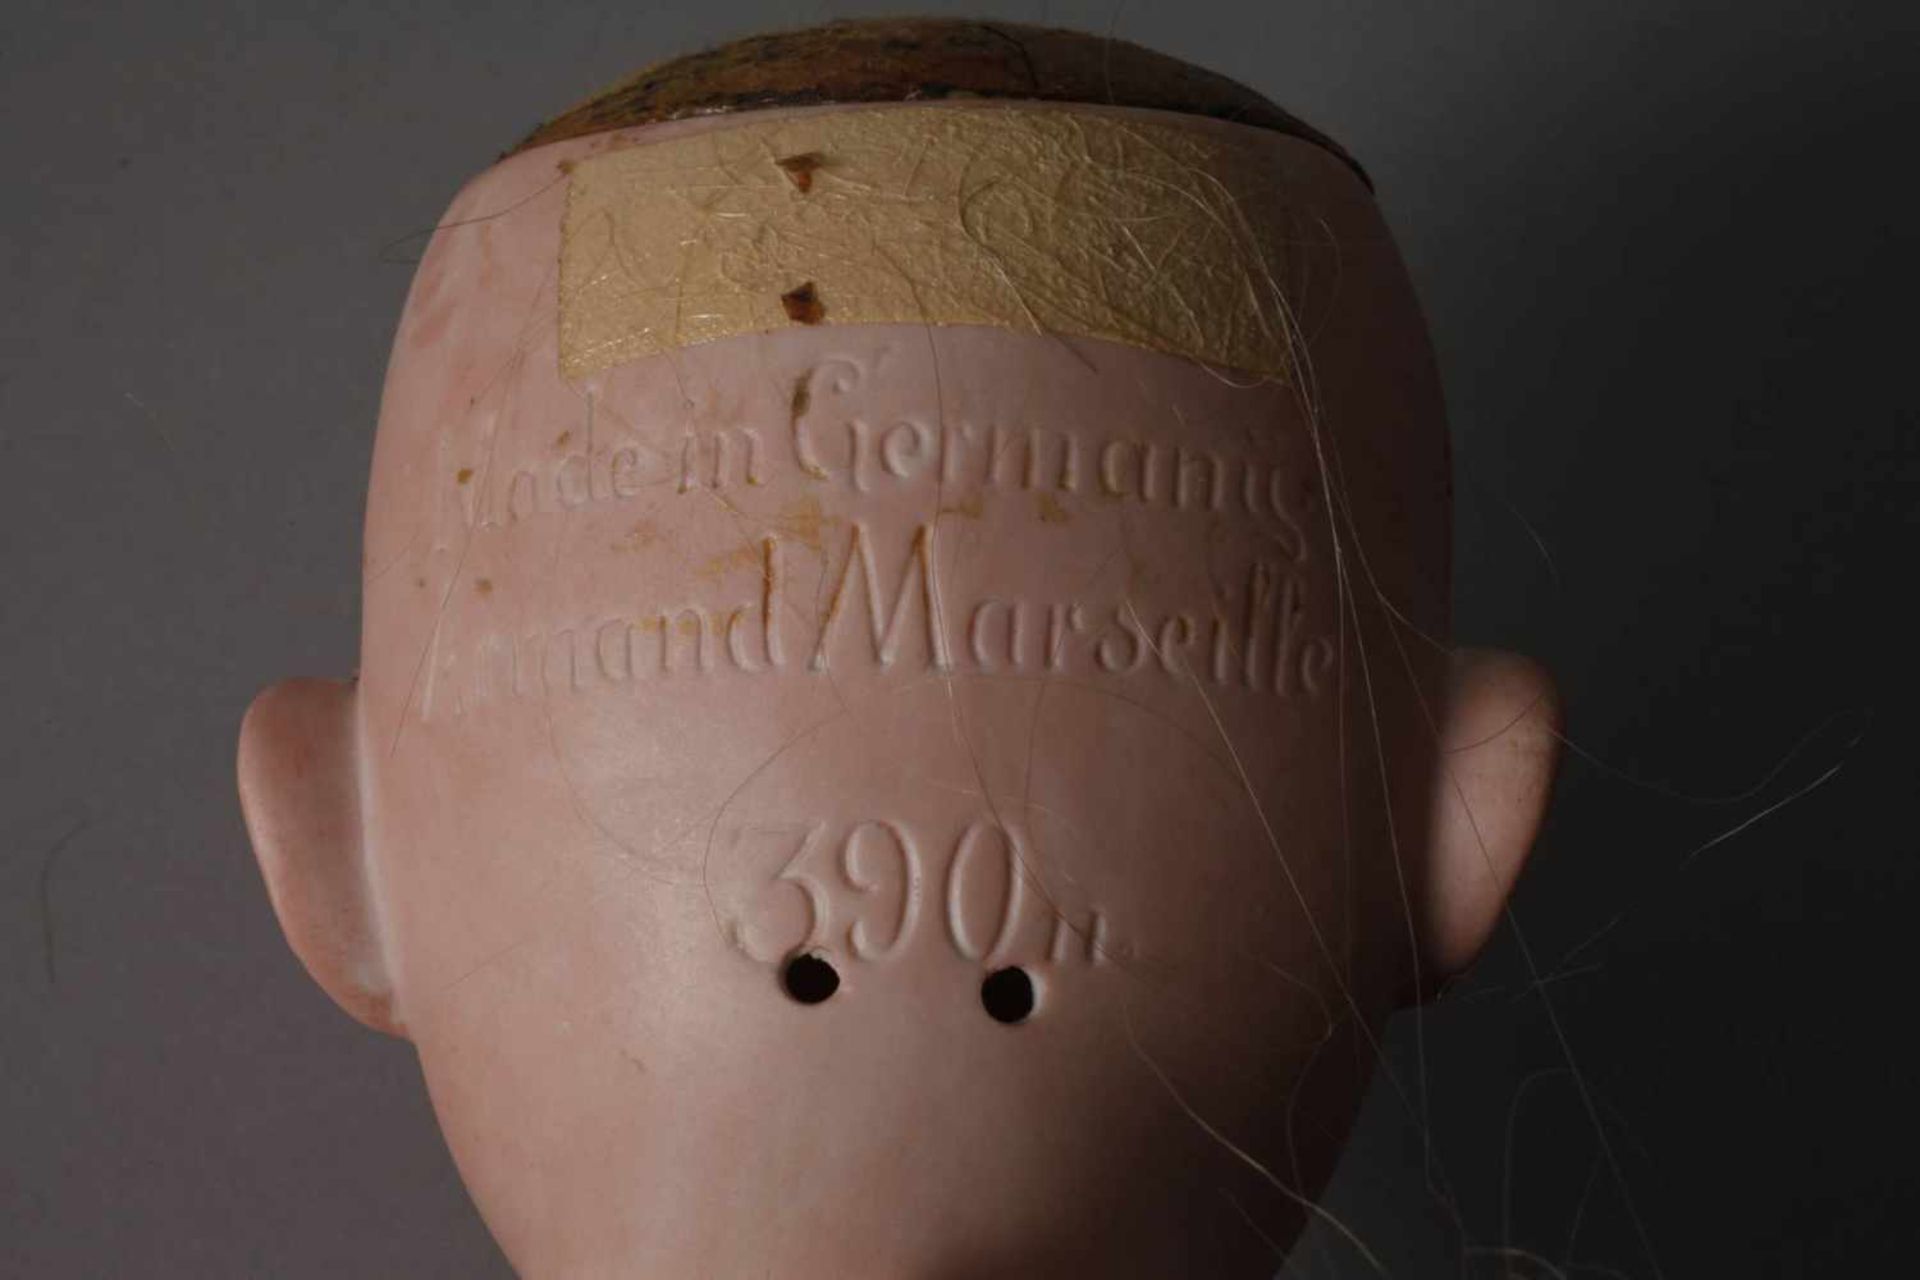 PorzellankopfpuppeArmand Marsaille, Nr. 390n A.8.M., Schlafaugen, offener Mund mit vier Zähnen, - Image 4 of 5